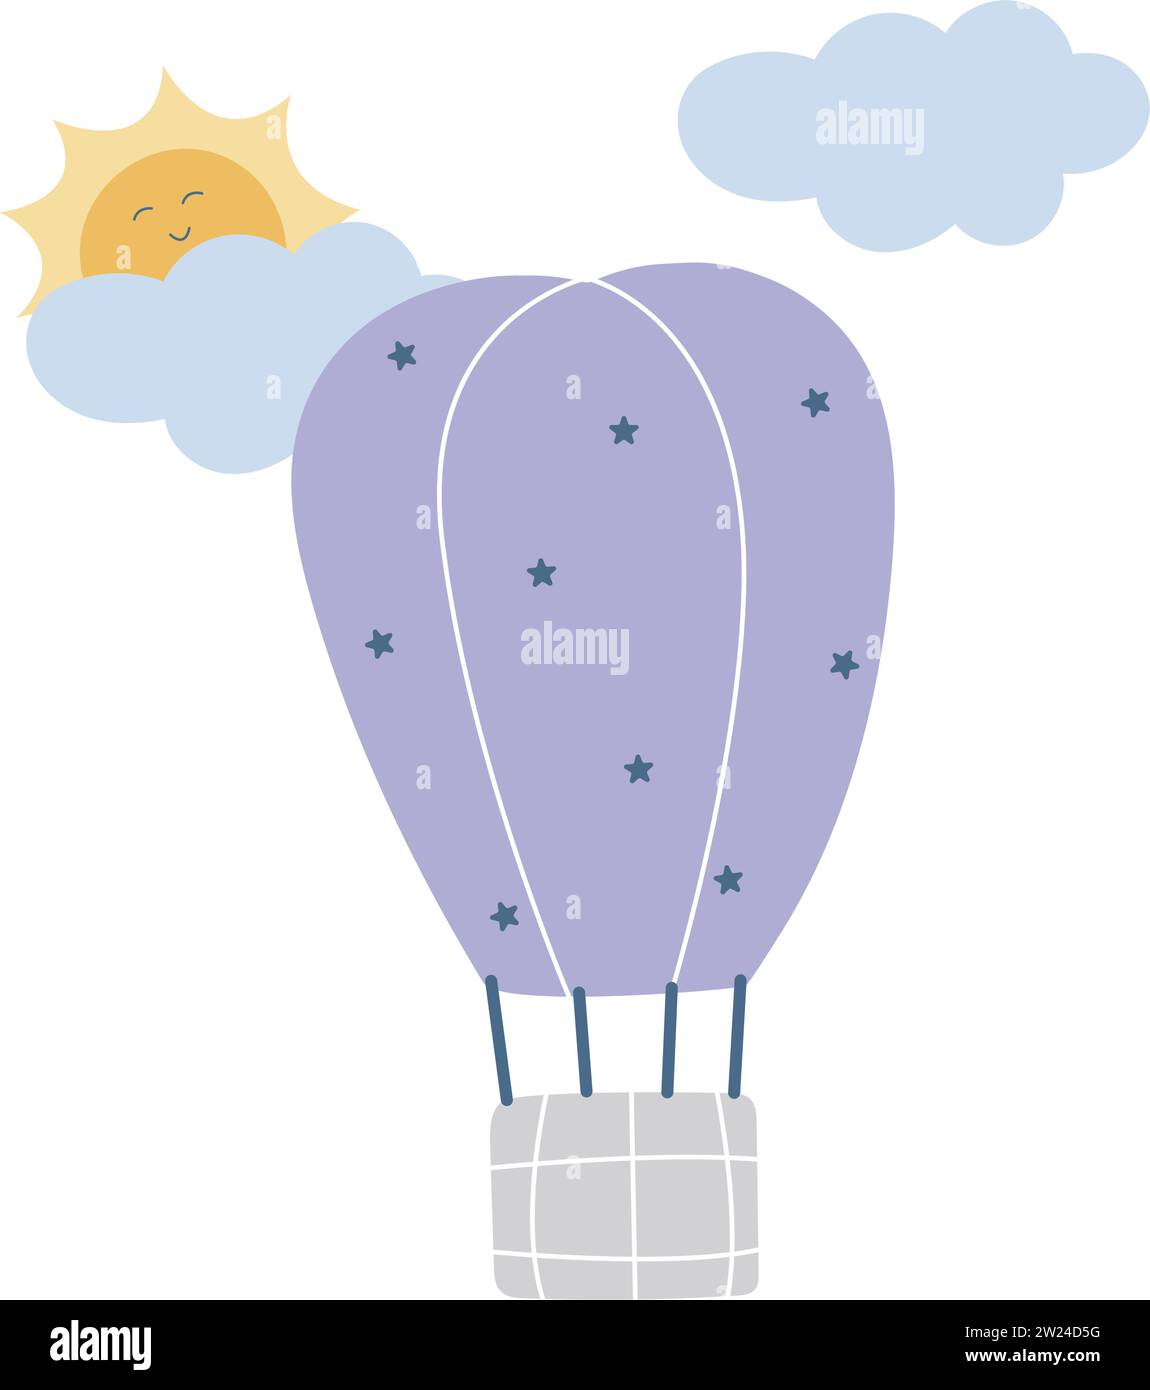 Mongolfiera per voli disegnati a mano. Il sole di Kawaii sbircia da dietro la nuvola. Volo aereo sul dirigibile, simpatiche illustrazioni per bambini. Accogliente e pastello Illustrazione Vettoriale